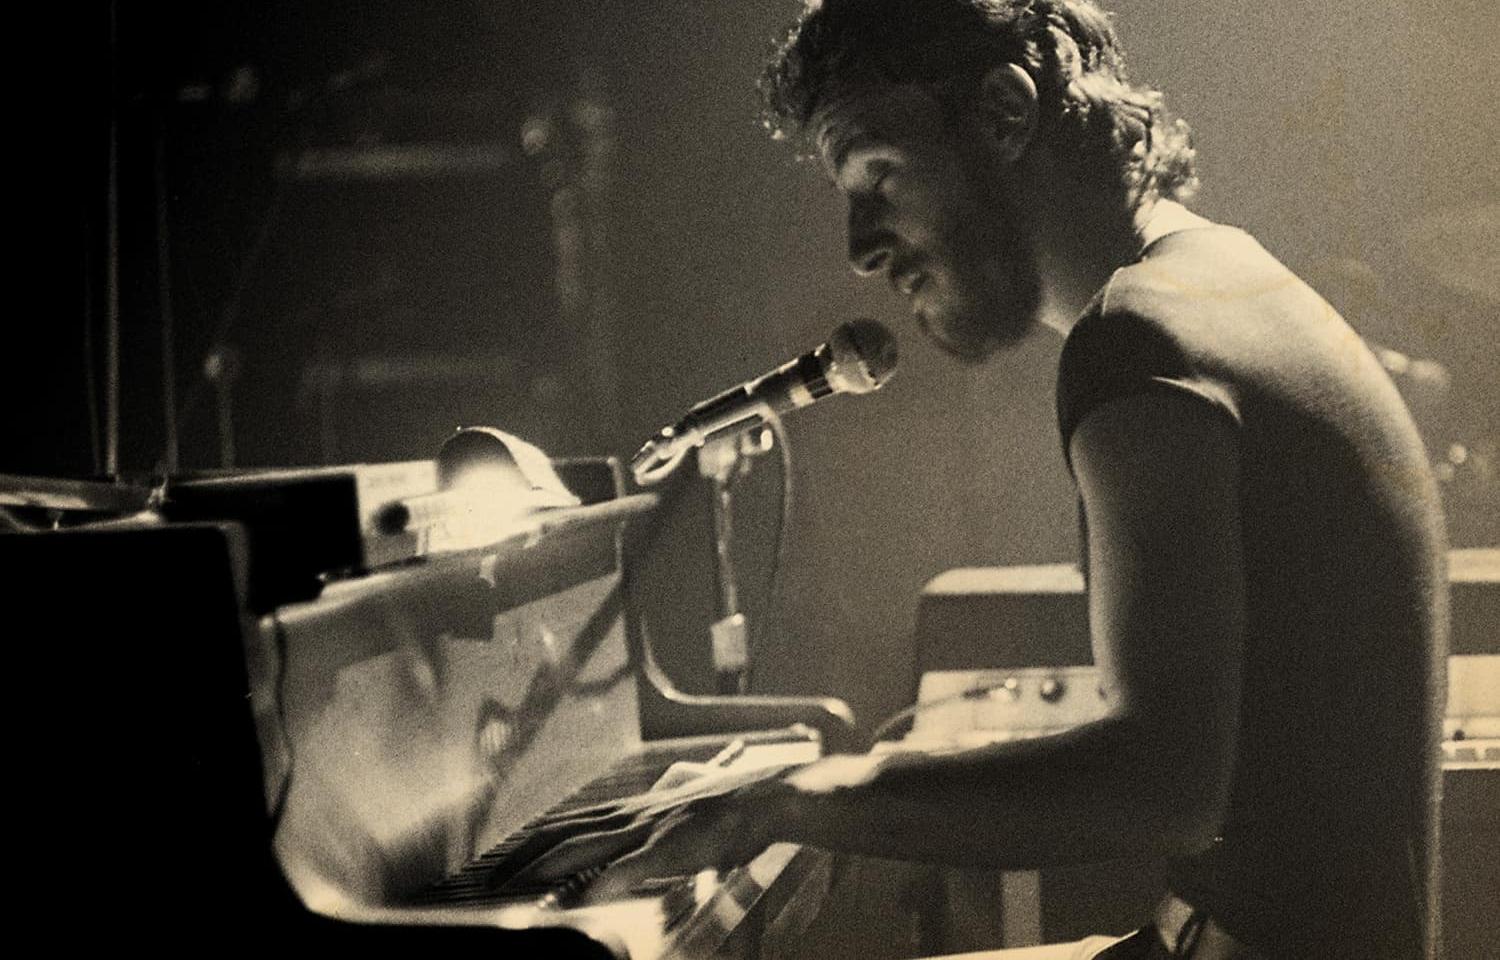 Bruce Springsteen spelar piano på sitt nya album med väl valda livetagningar ur karriären.